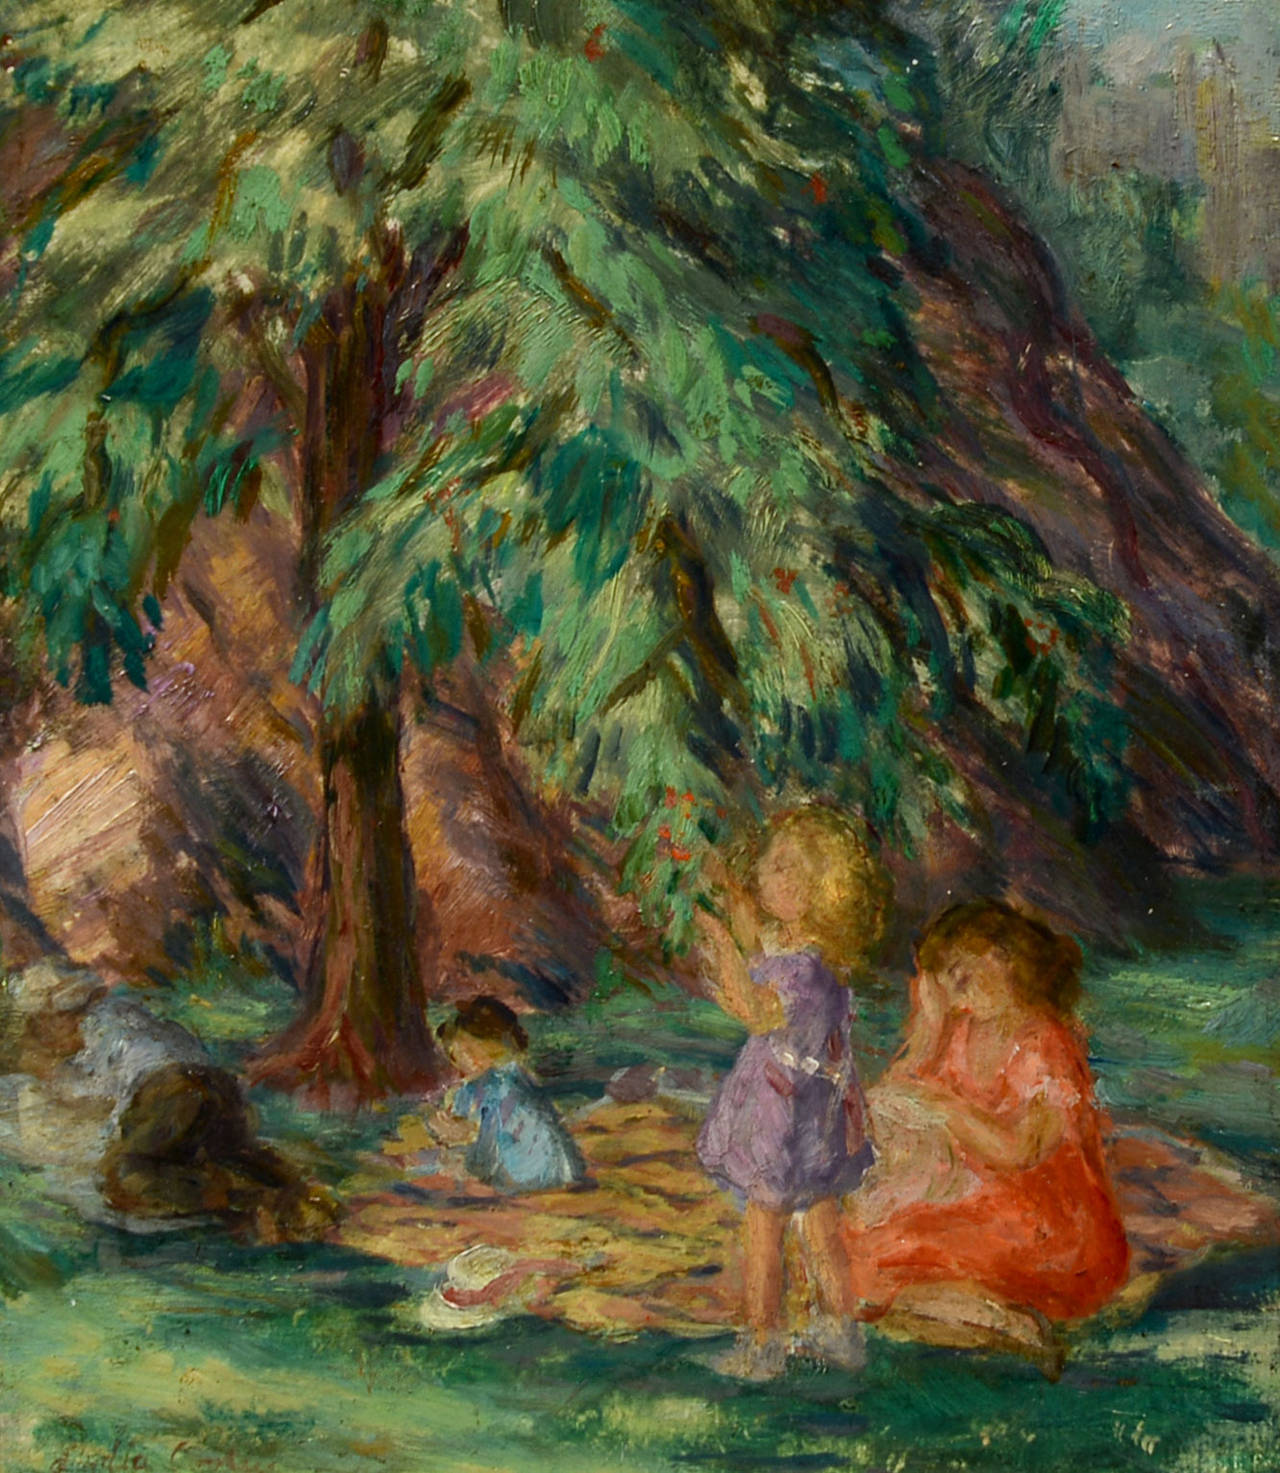 Née en 1906, Cooley s'est installée à New York où elle a étudié à l'Arts Student League avec John Sloan. Ses peintures de genre représentant des femmes, des enfants et la classe ouvrière s'inscrivent dans la tradition de l'école Ashcan. Alors